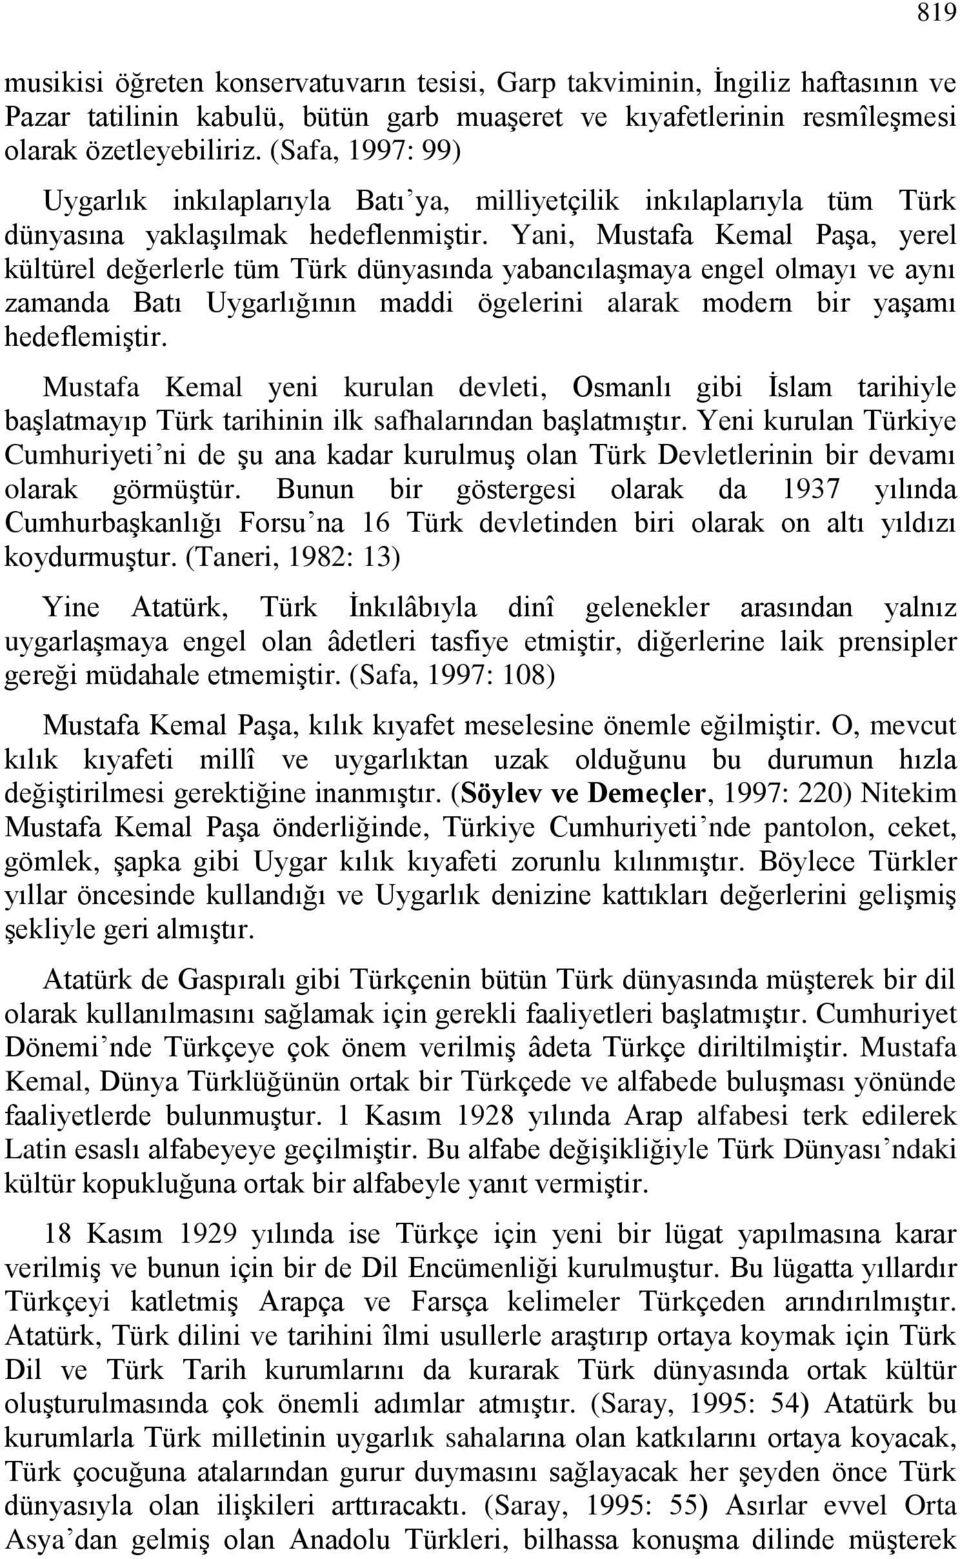 Yani, Mustafa Kemal Paşa, yerel kültürel değerlerle tüm Türk dünyasında yabancılaşmaya engel olmayı ve aynı zamanda Batı Uygarlığının maddi ögelerini alarak modern bir yaşamı hedeflemiştir.